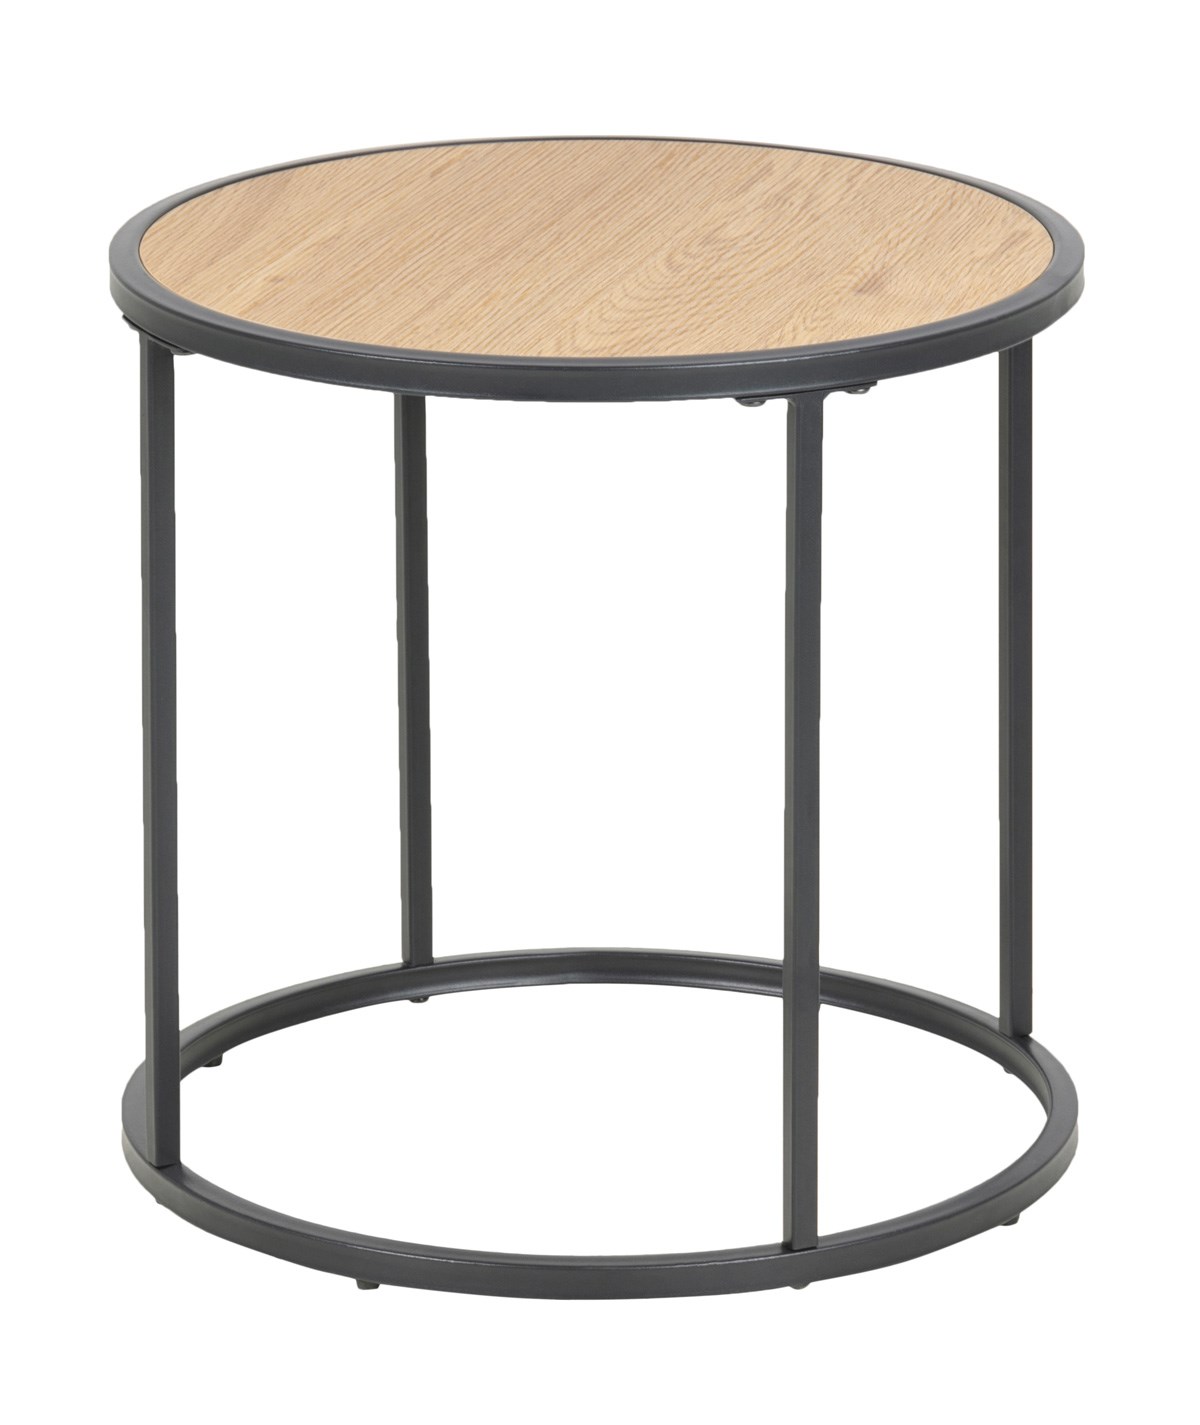 Table-appoint-basse-ronde-Seaford-decor-wild-oak-pieds-metal-noir-mat-80711-45cm-Actona